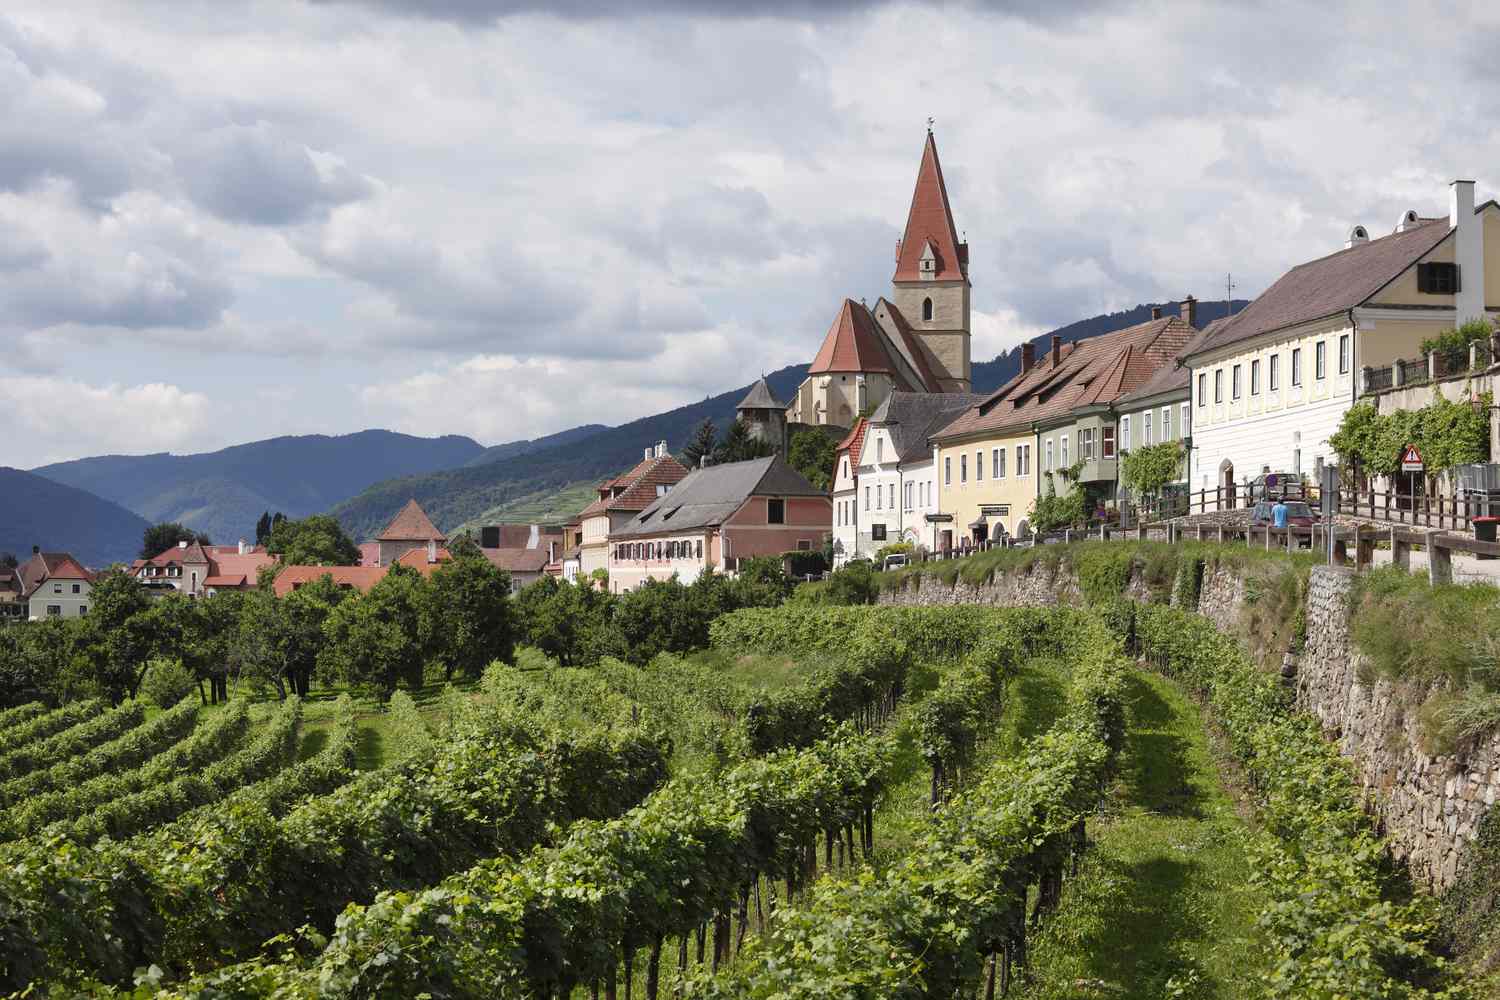 奧地利葡萄酒莊體驗。